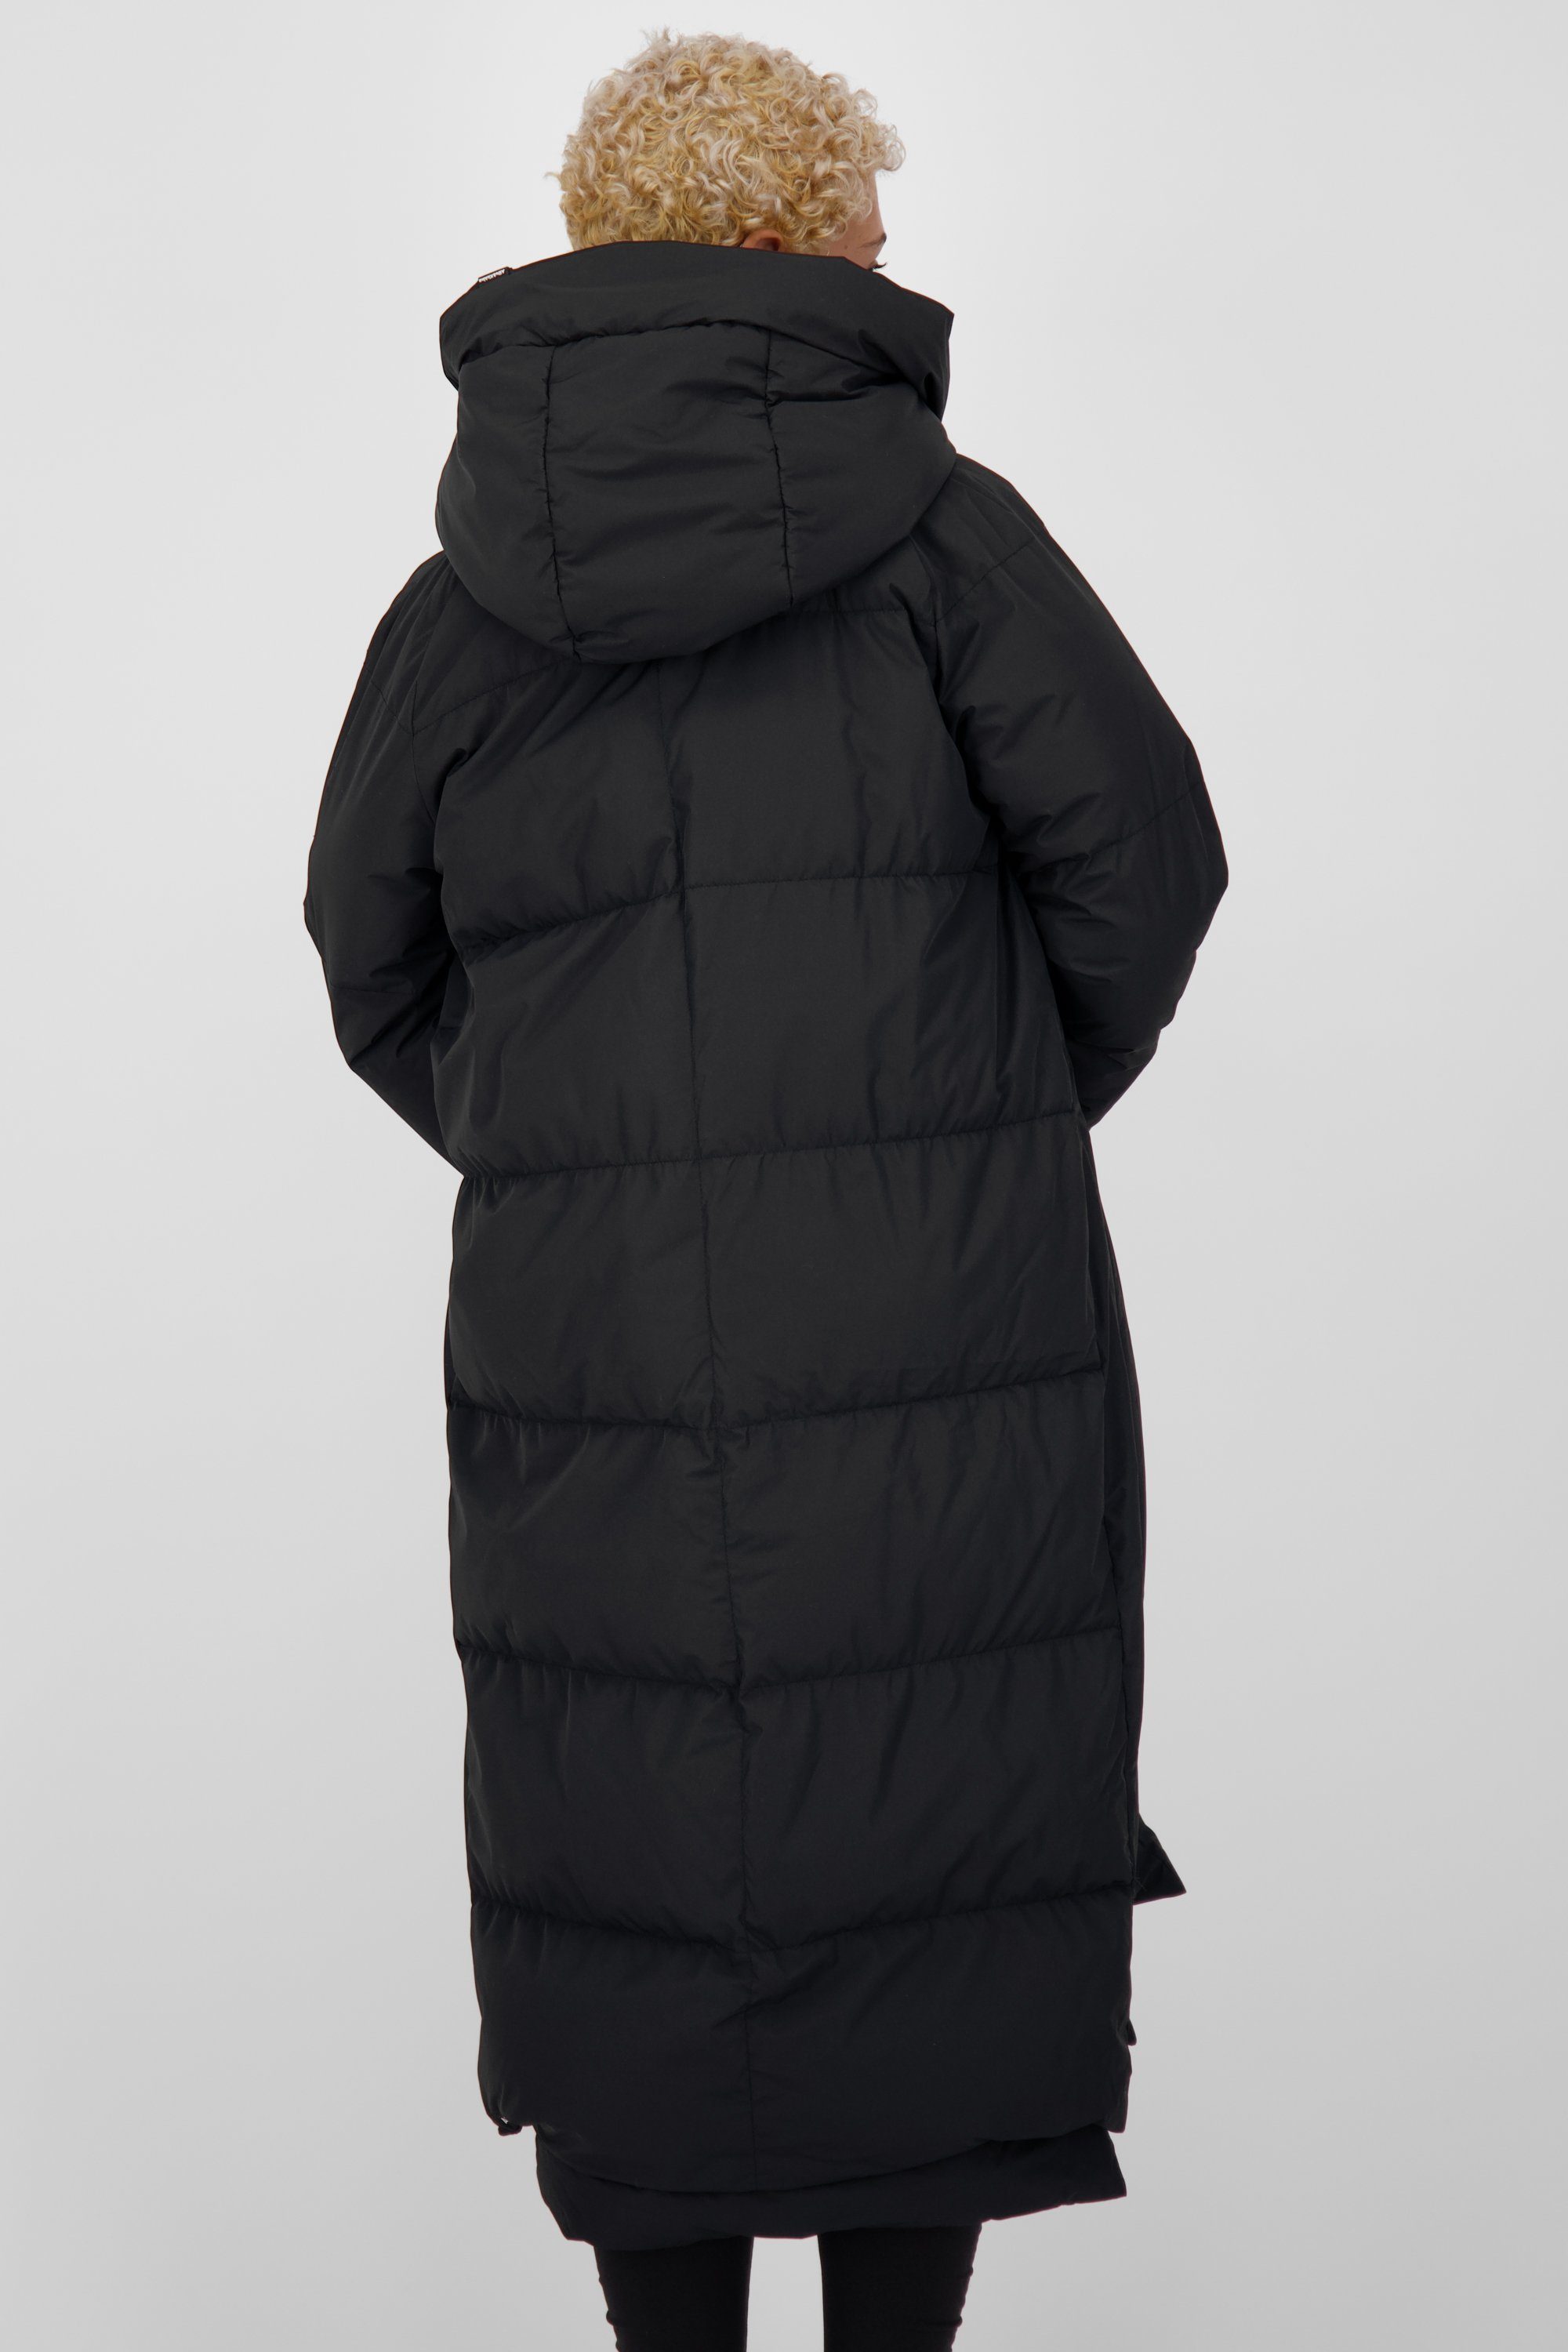 Alife & Kickin Winterjacke gefütterte moonless Jacke A Coat Damen Winterjacke, RihannaAK